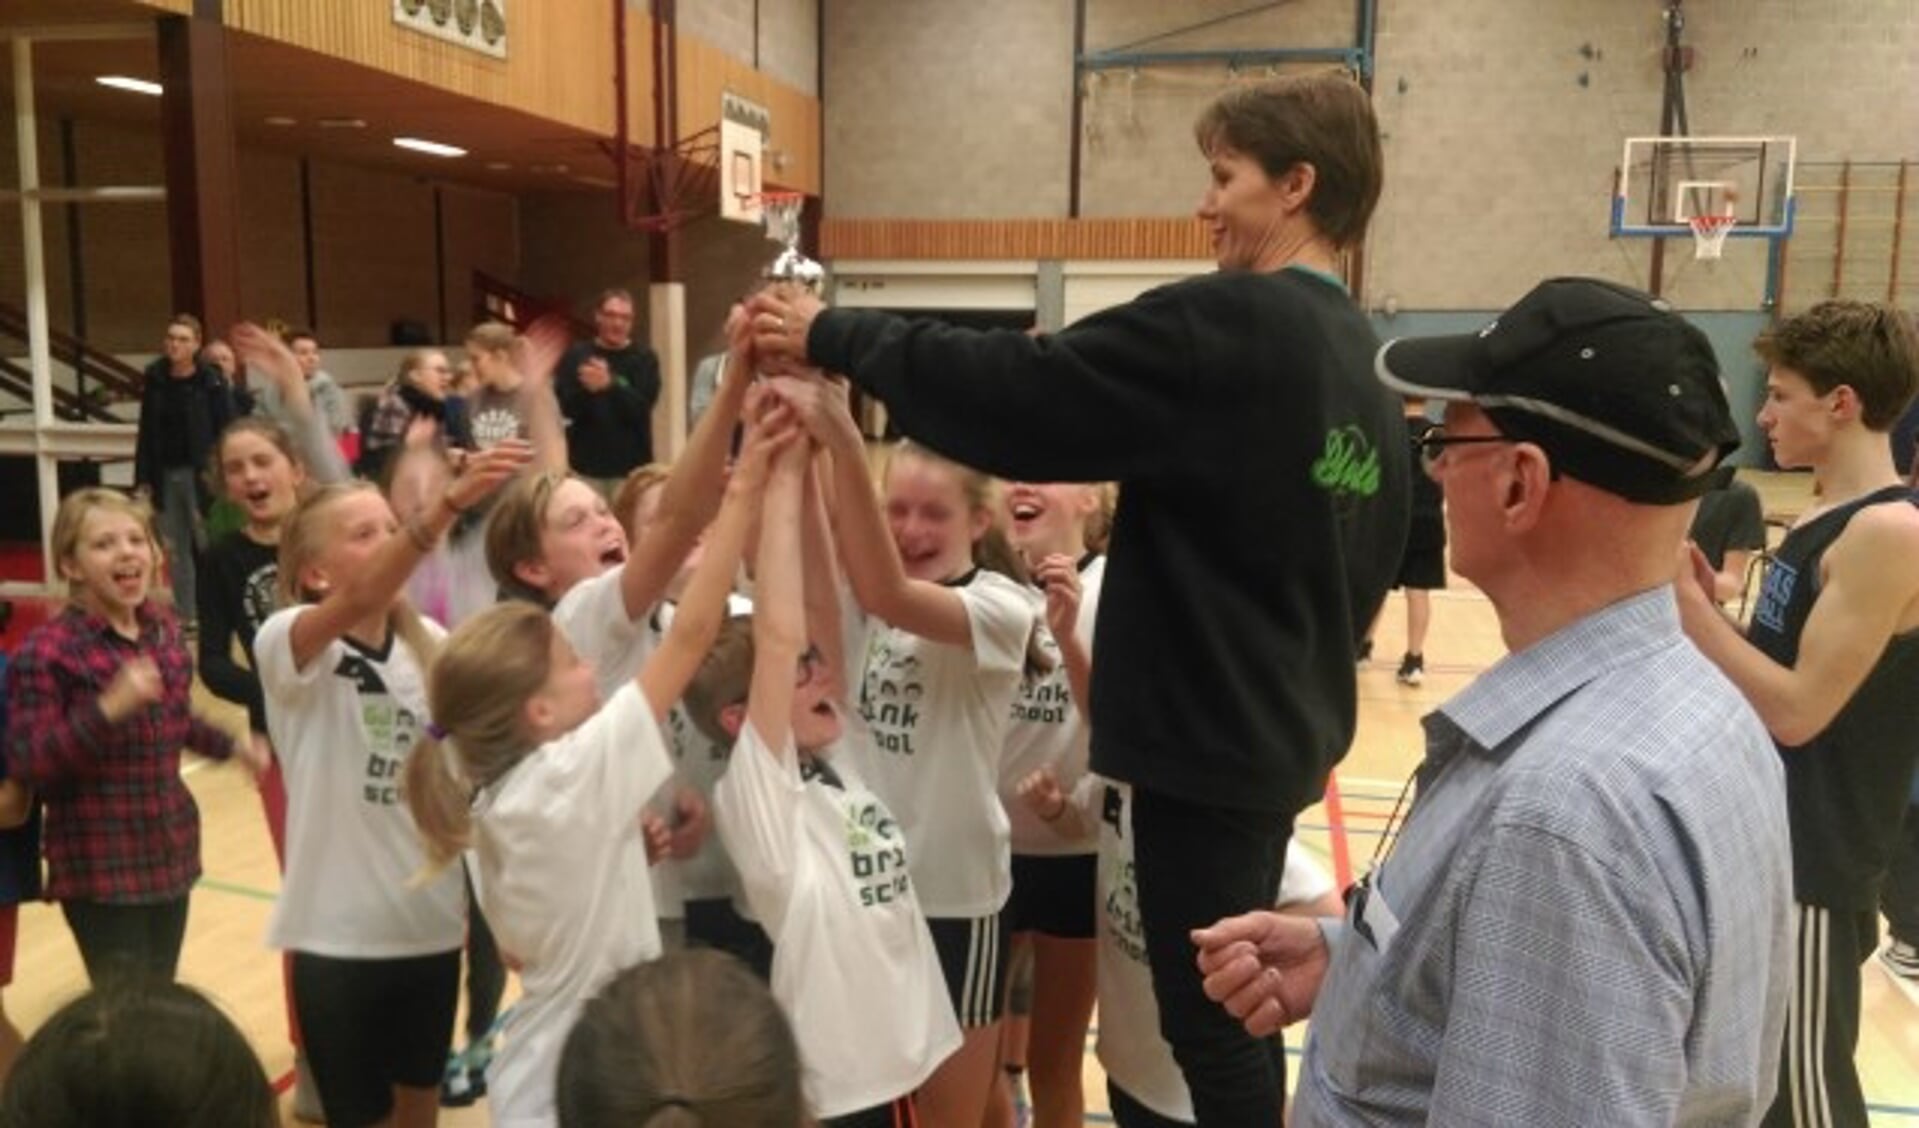 Team 1 van de Brinkschool werd de winnaar van het schoolbasketbaltoernooi.